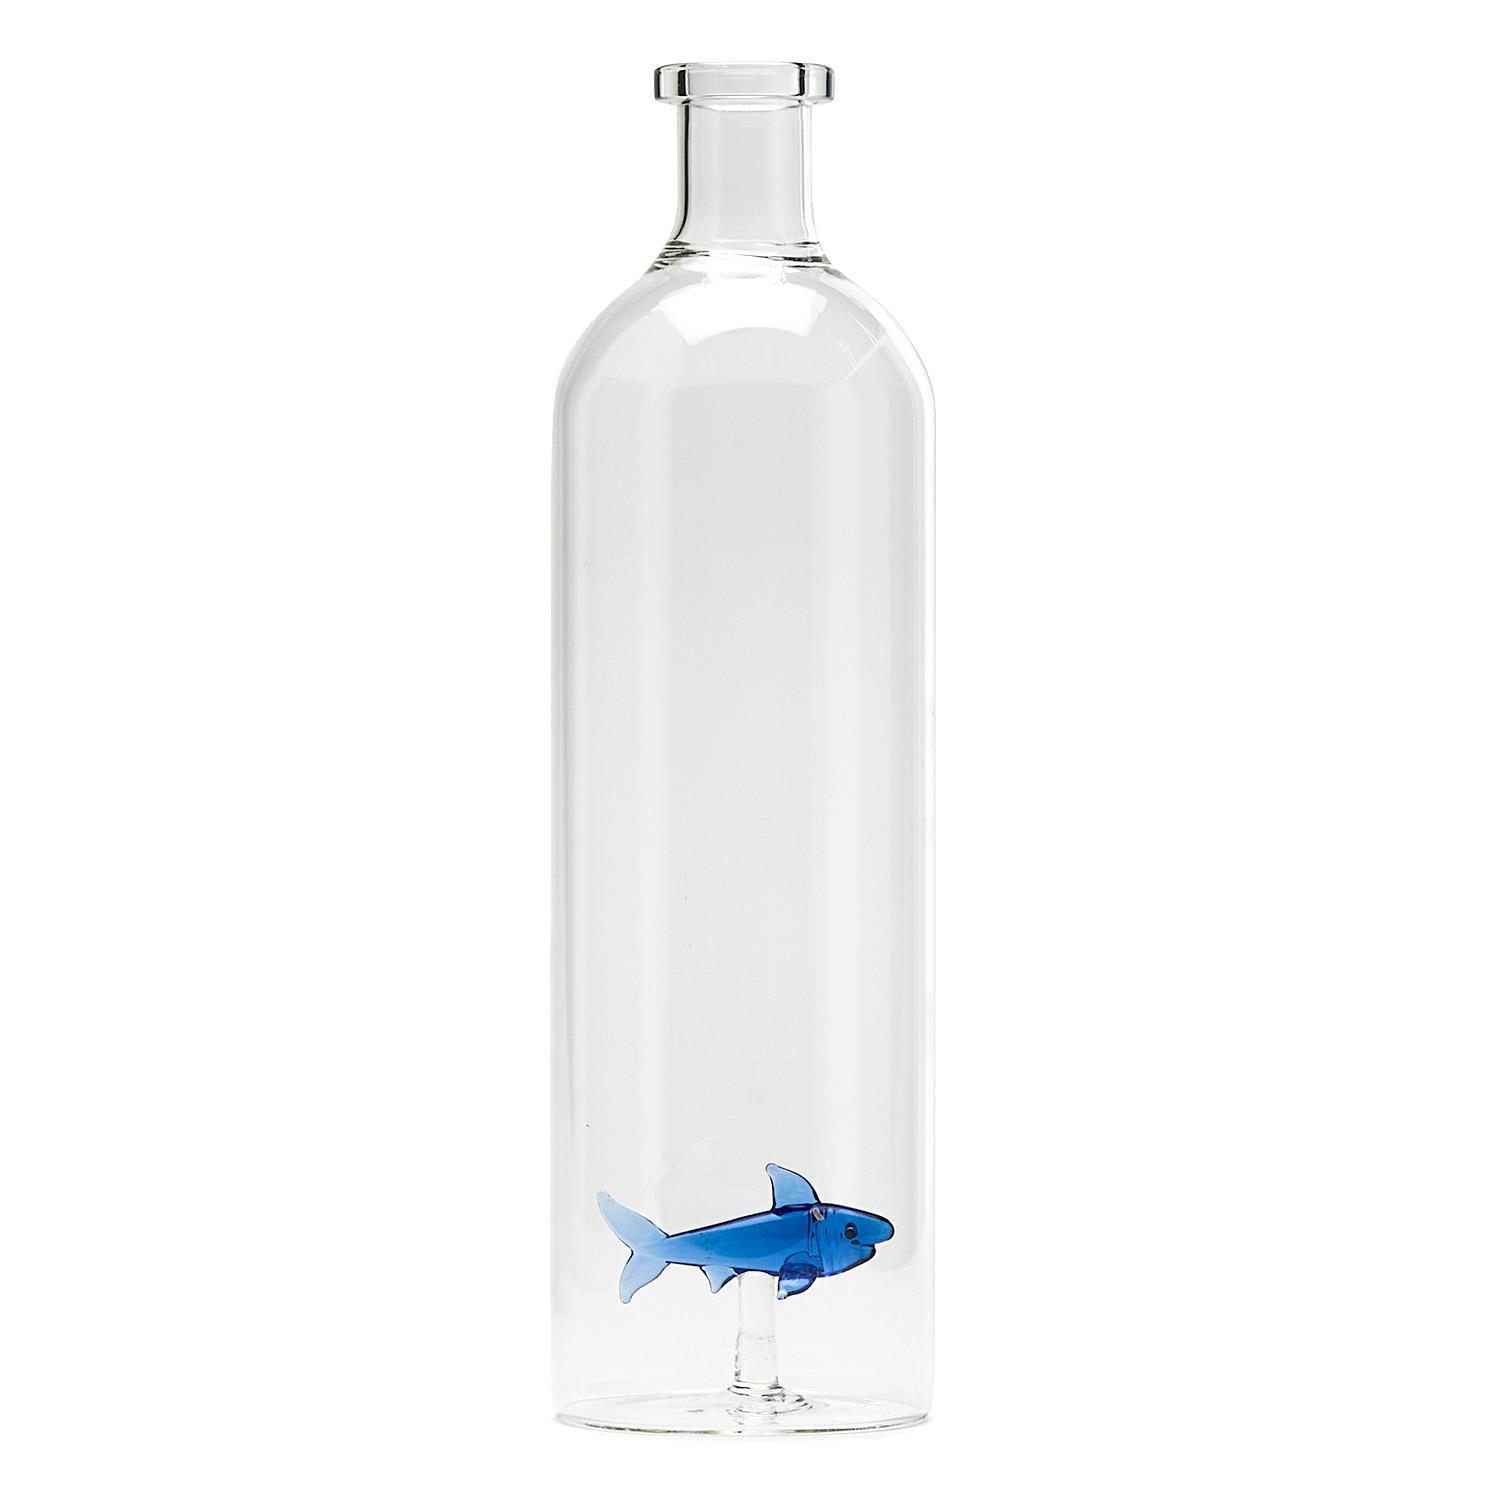 Great White Shark Glass Bottle Vase Decanter - 20 oz. - Mellow Monkey